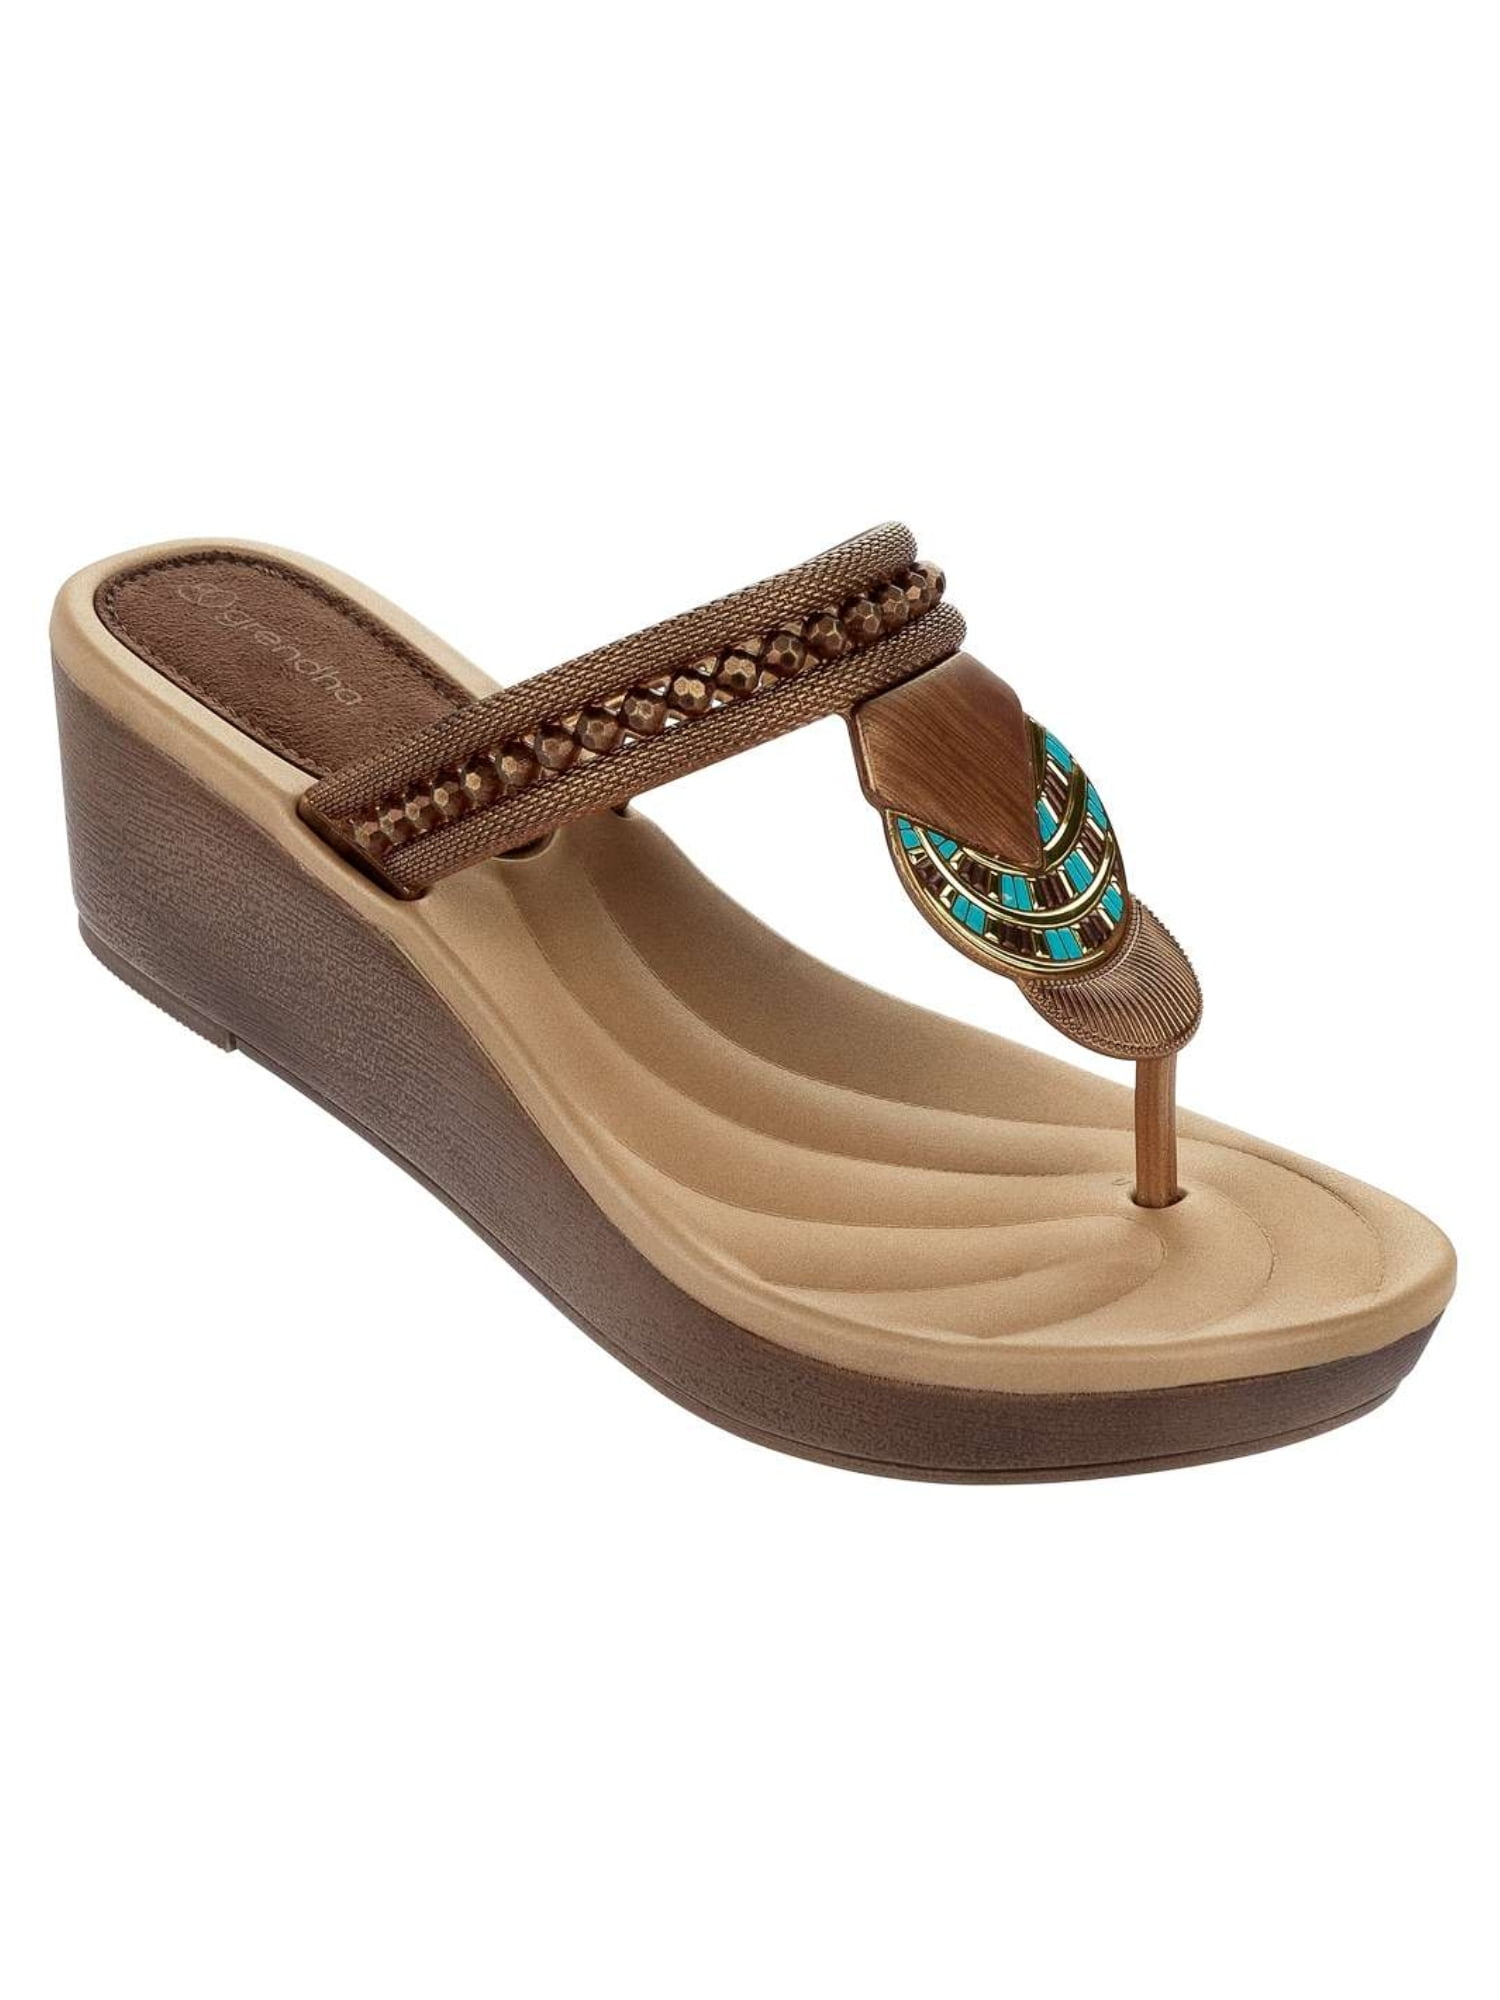 Petrify Accor detection Grendha Women's Tribal Platform Sandal (Gold;Size 8) - Walmart.com